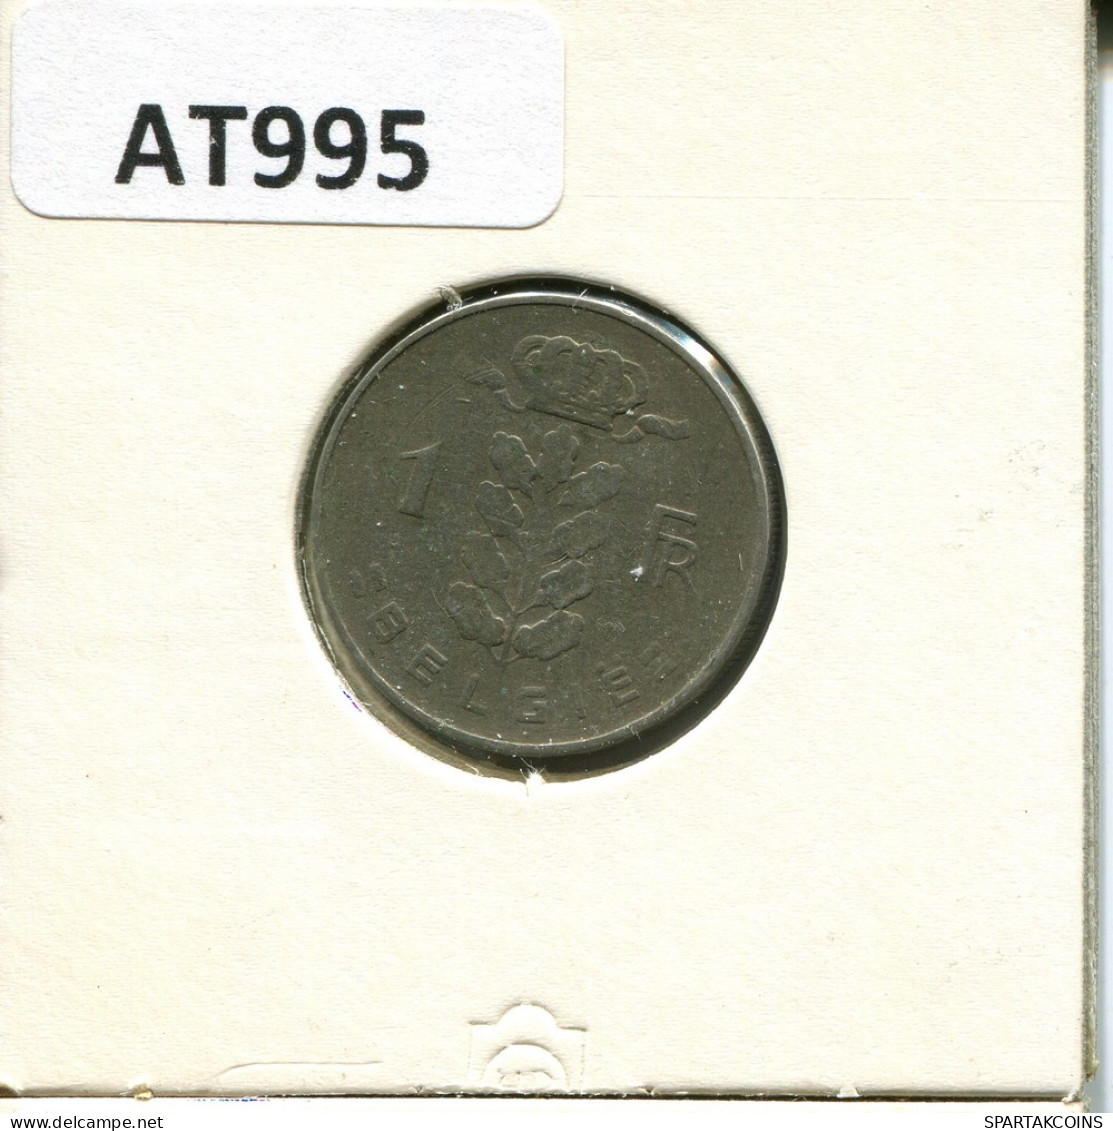 1 FRANC 1950 BÉLGICA BELGIUM Moneda #AT995.E - 1 Franc